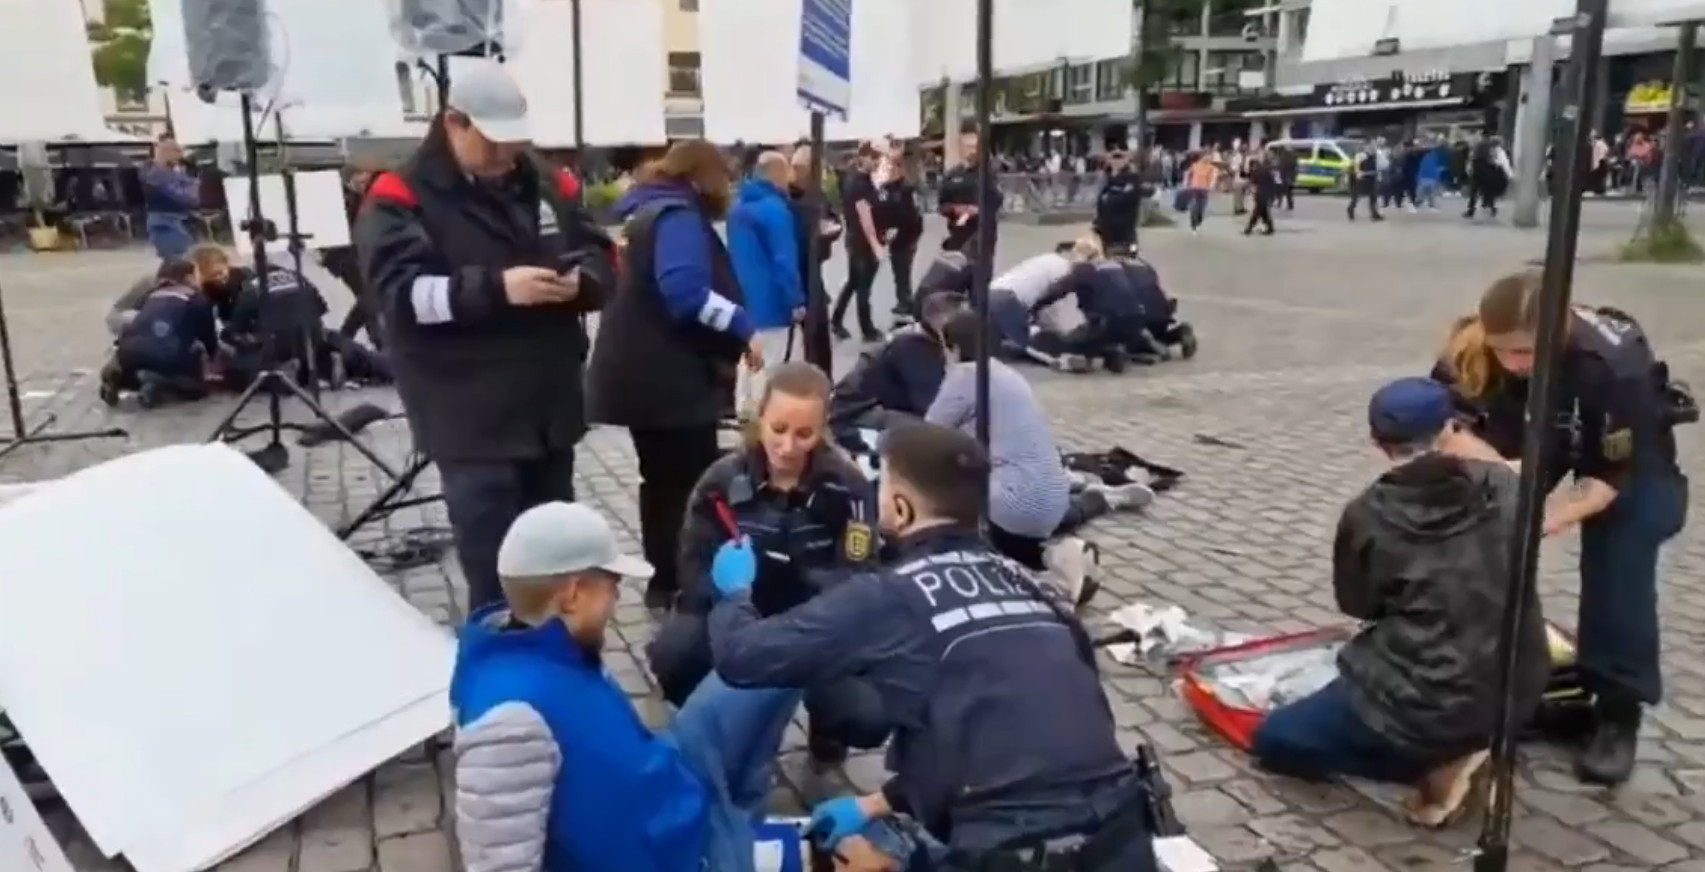 Γερμανία: Οι σκληρές εικόνες από την επίθεση εναντίον ακροδεξιού πολιτικού